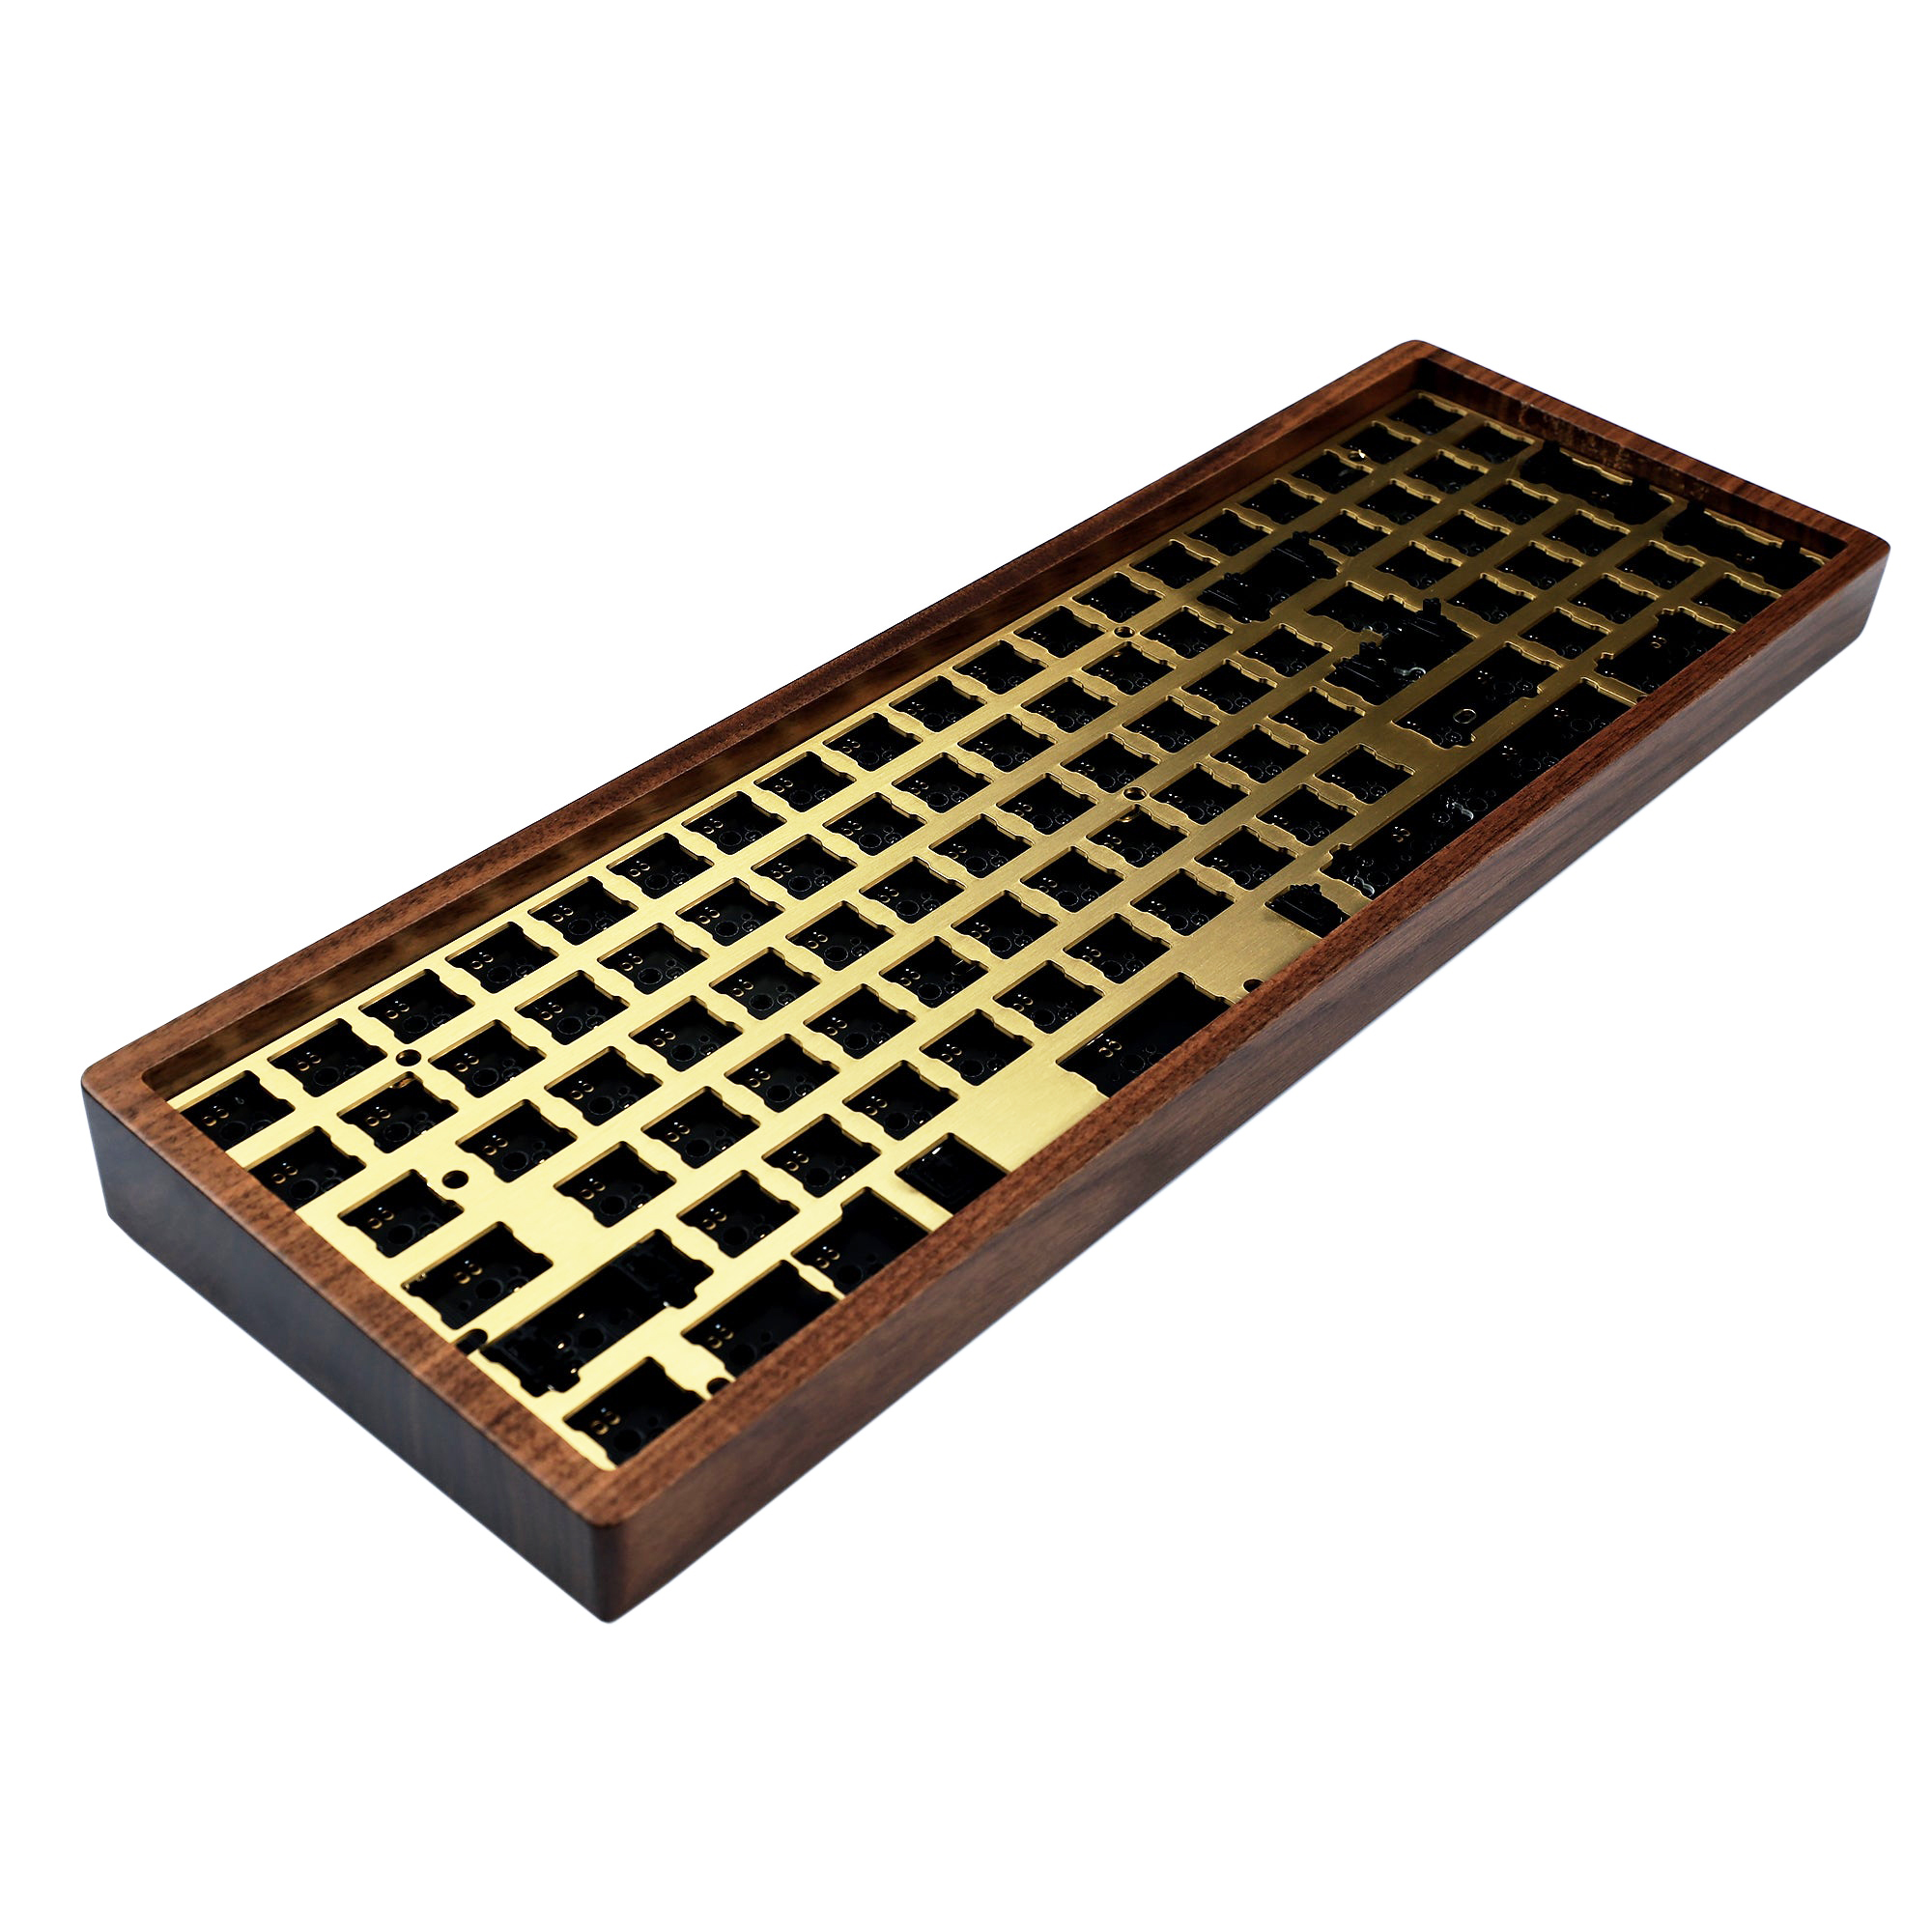 96 Clavier Hotswap Case en bois |QMK via Under Glow RGB ANSI ISO PCB ALU PLAQUE BOISE BOYAUT WOIND |Pour les claviers mécaniques MX